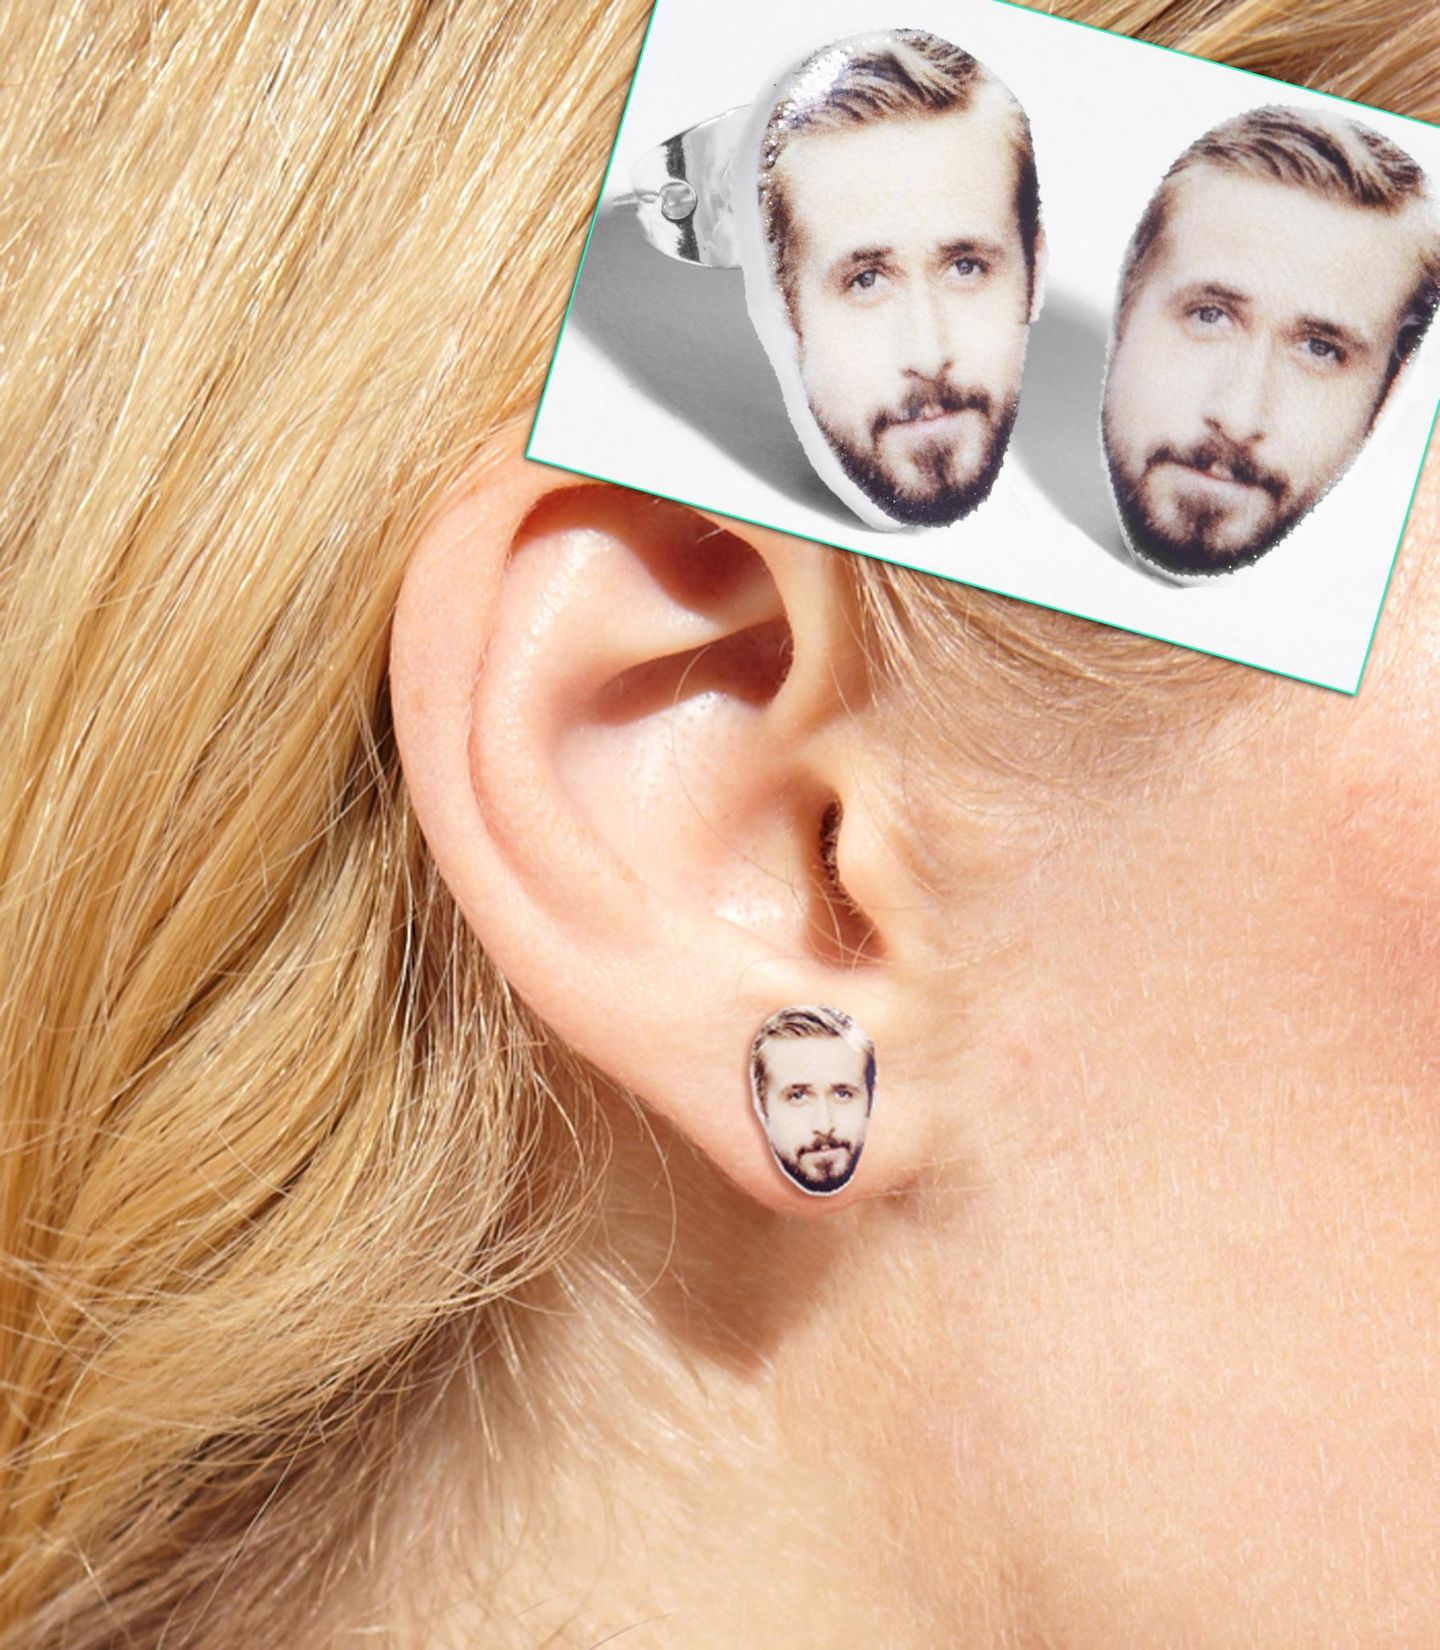 Wer Ryan Gosling immer dabei haben möchte, kann auf diese Ohrstecker zurückgreifen. Vielleicht flüstert er einem dann auch Nettigkeiten ins Ohr.